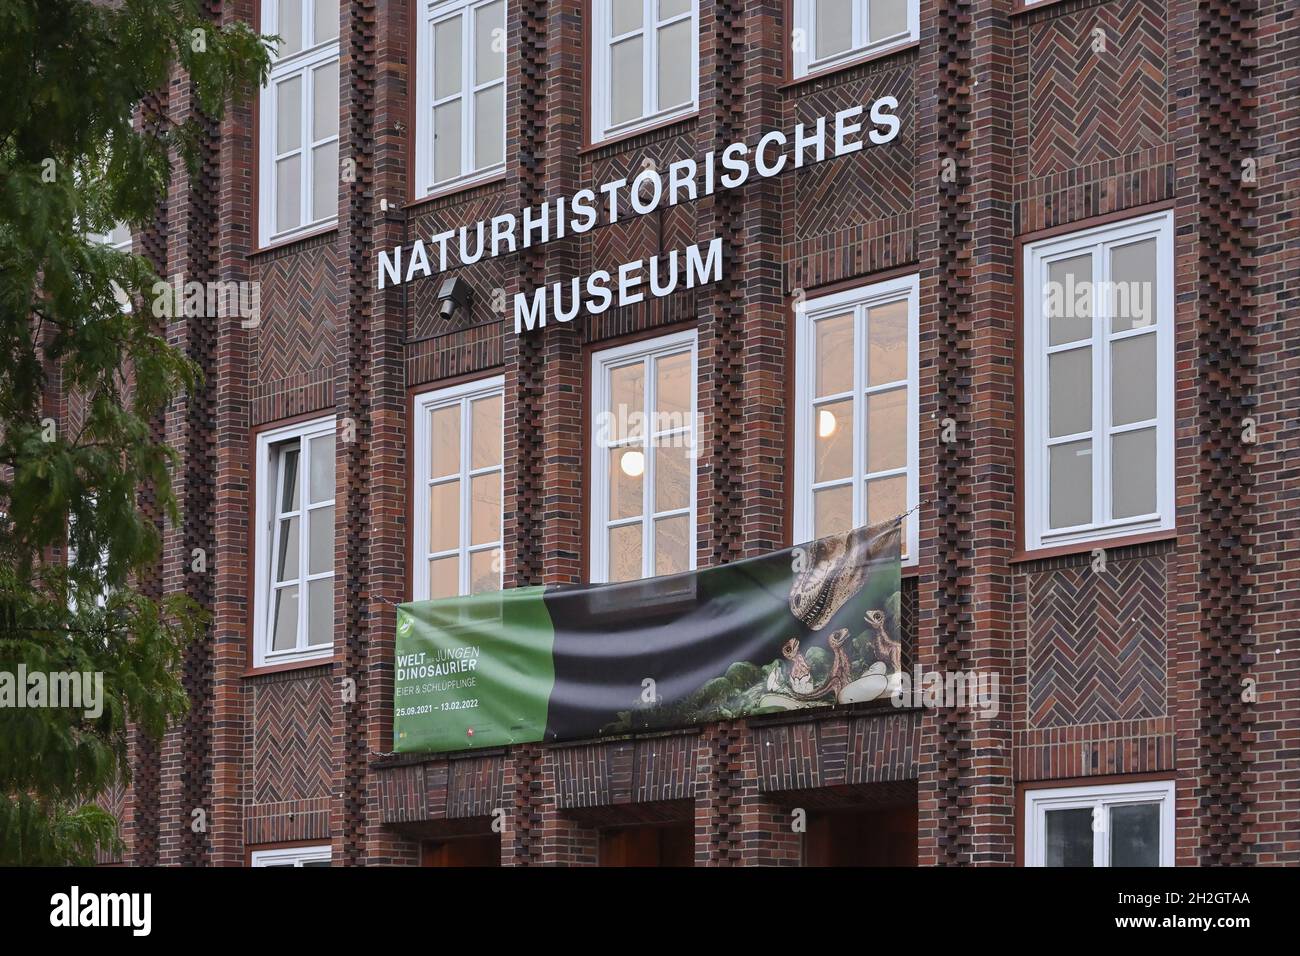 Musée Naturhistorisches Braunschweig, Musée national d'Histoire naturelle de Braunschweig, Allemagne.Musée scientifique de zoologie, fondé en 1754. Banque D'Images